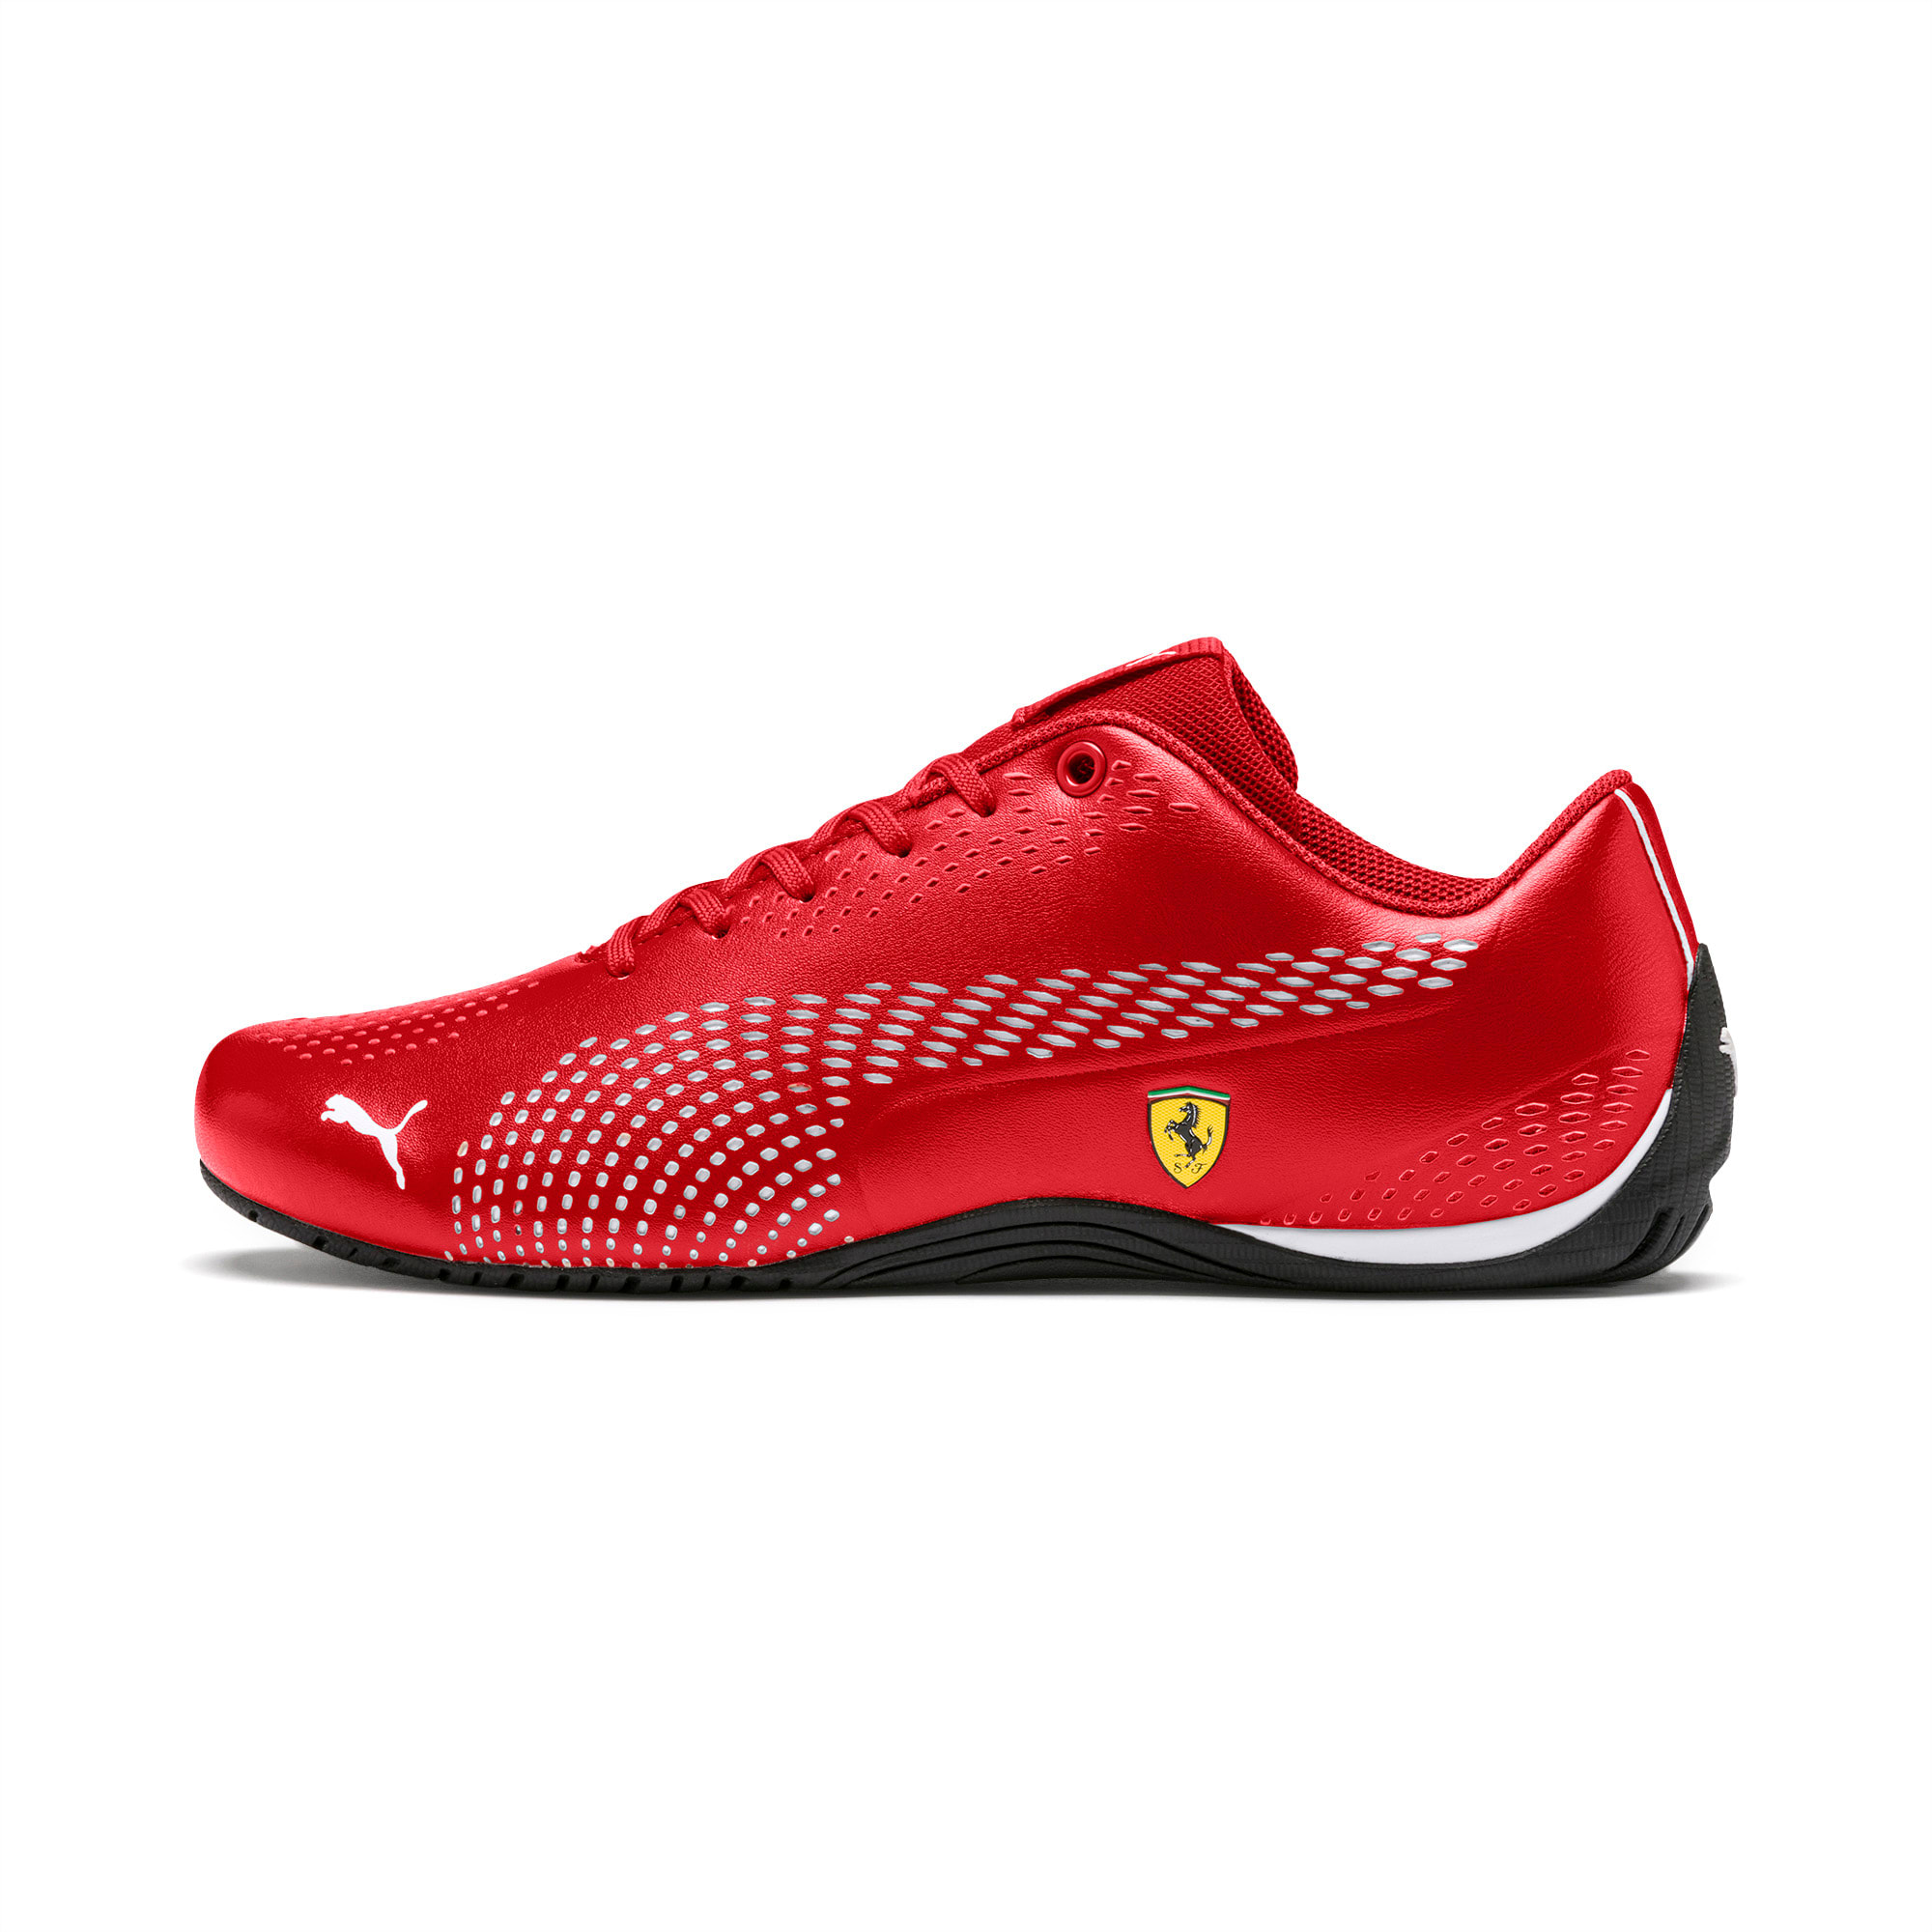 Scuderia Ferrari Drift Cat 5 Ultra II Shoes | PUMA US